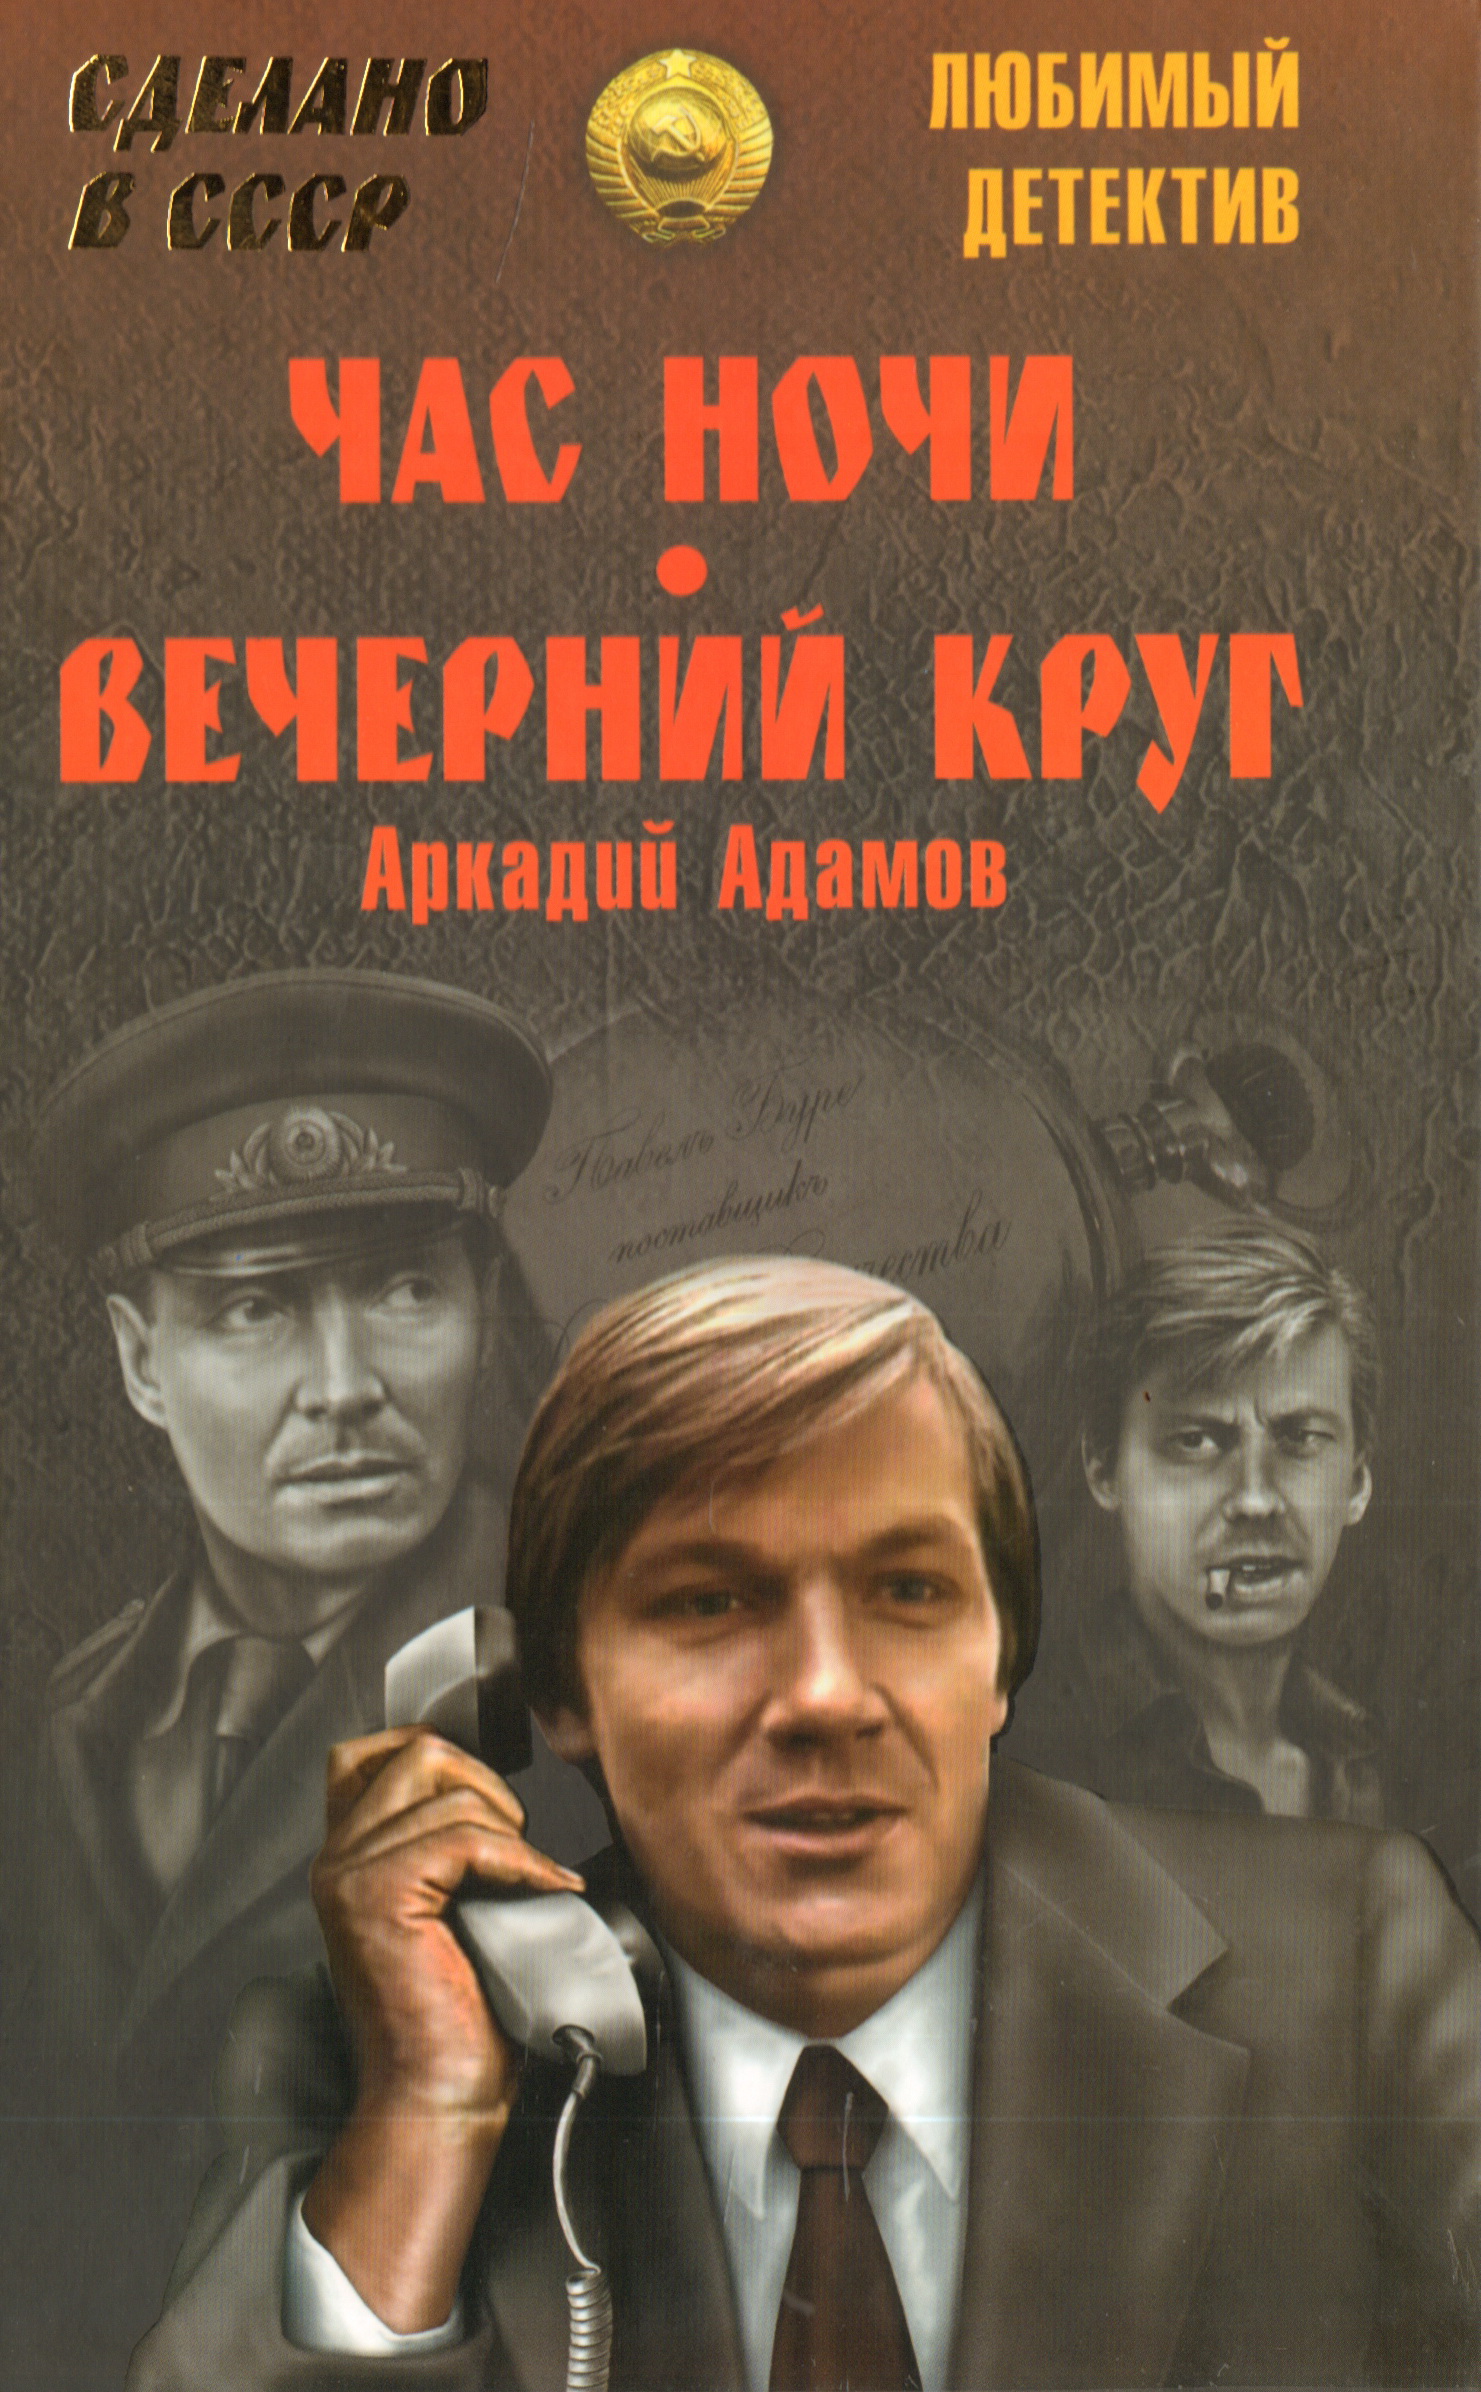 Новинки жанра детектив. Советские детективы. Советские детективы книги.